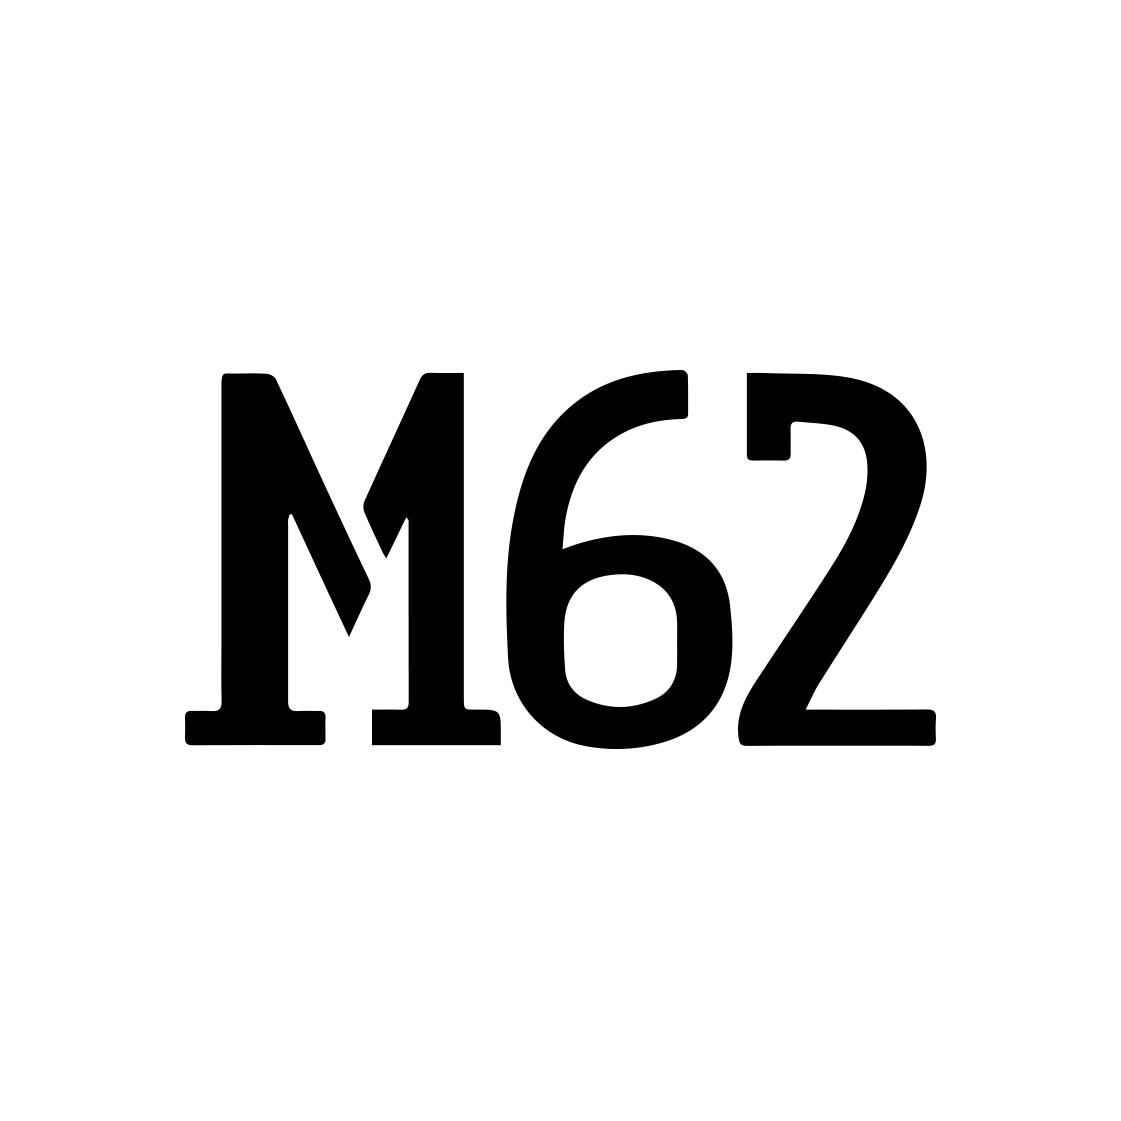 M 62